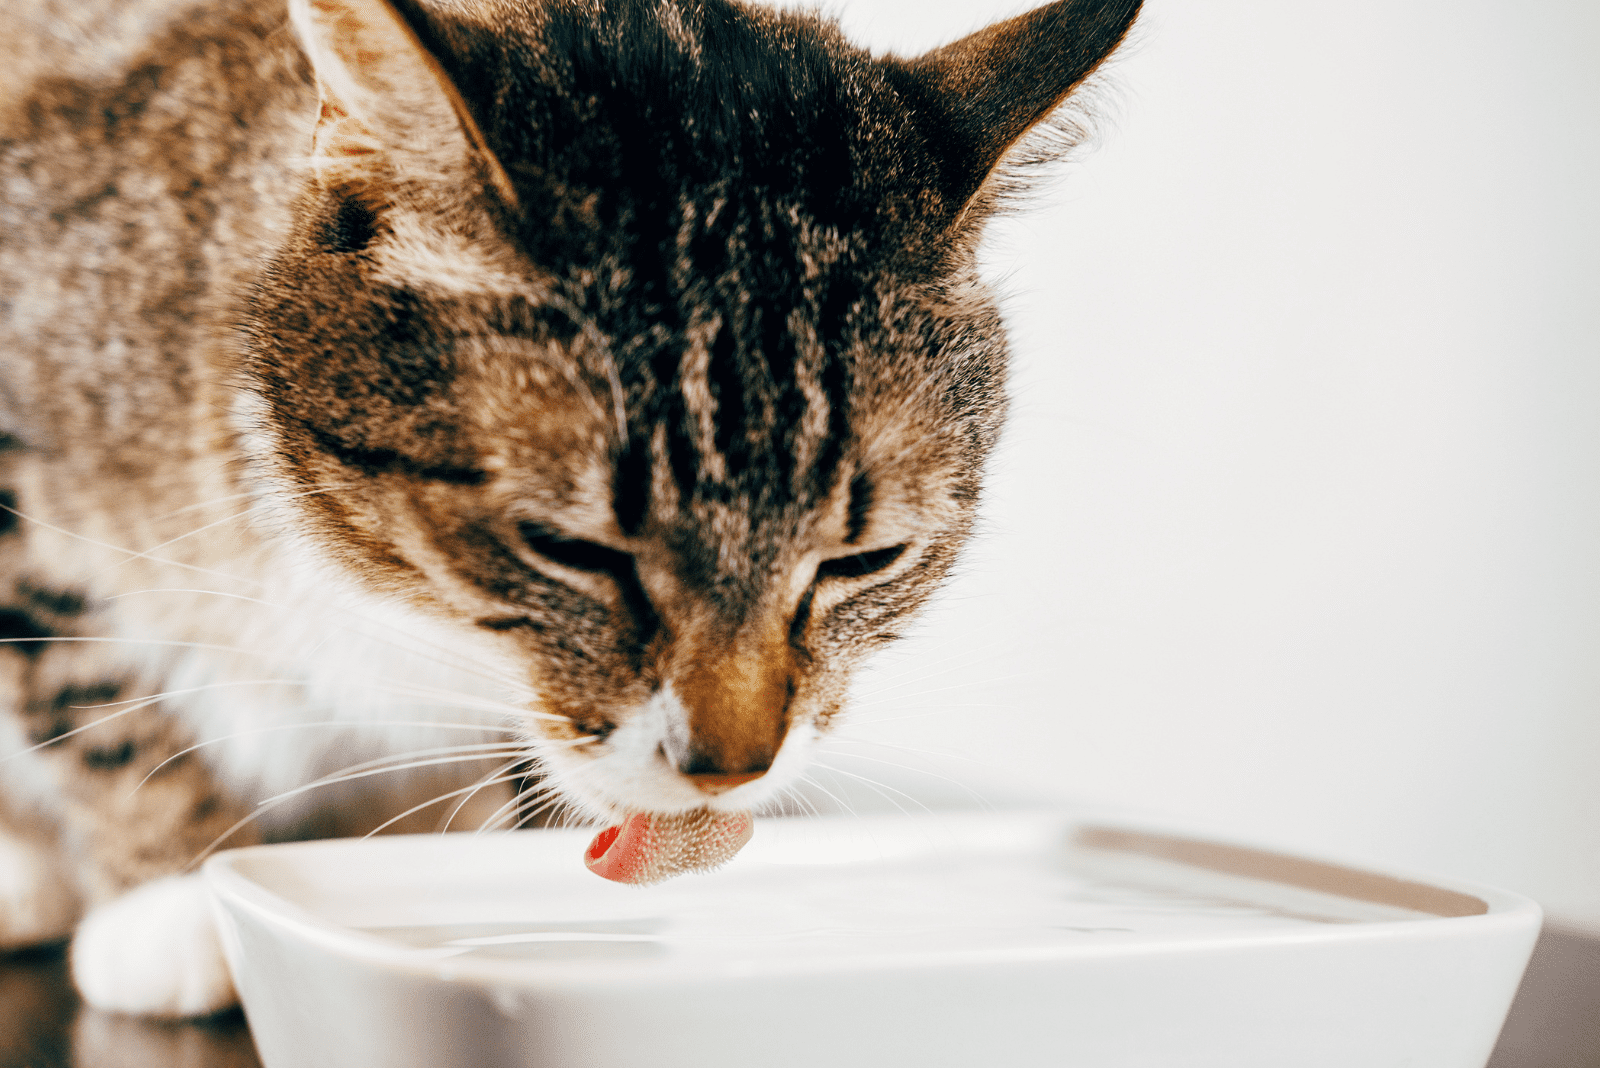 de kat drinkt water uit de kom